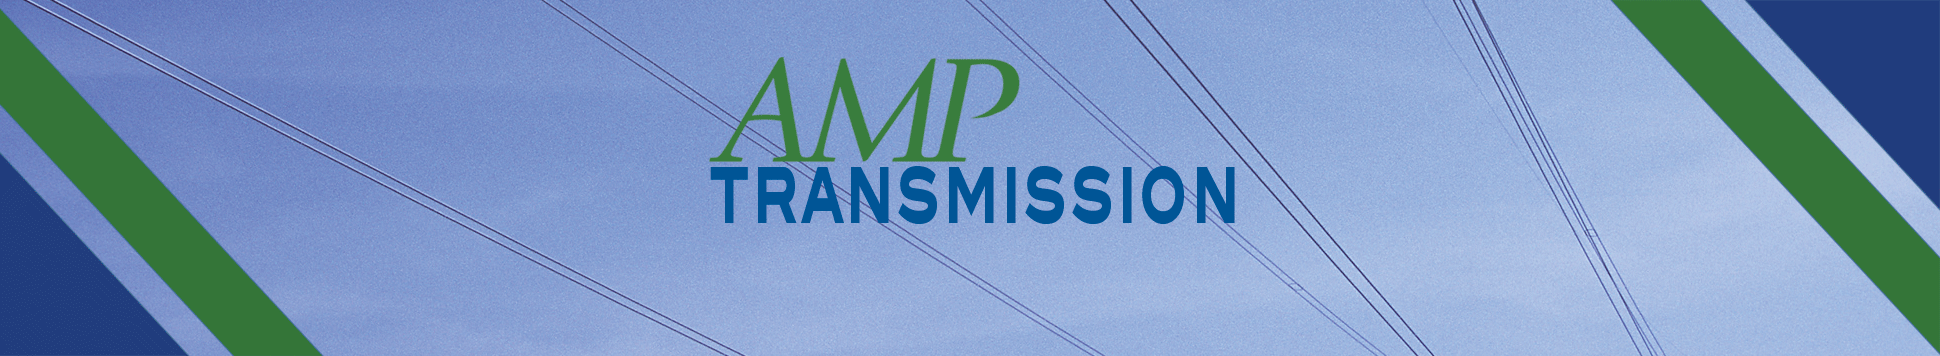 AMPT-logo-left-grn-blu2